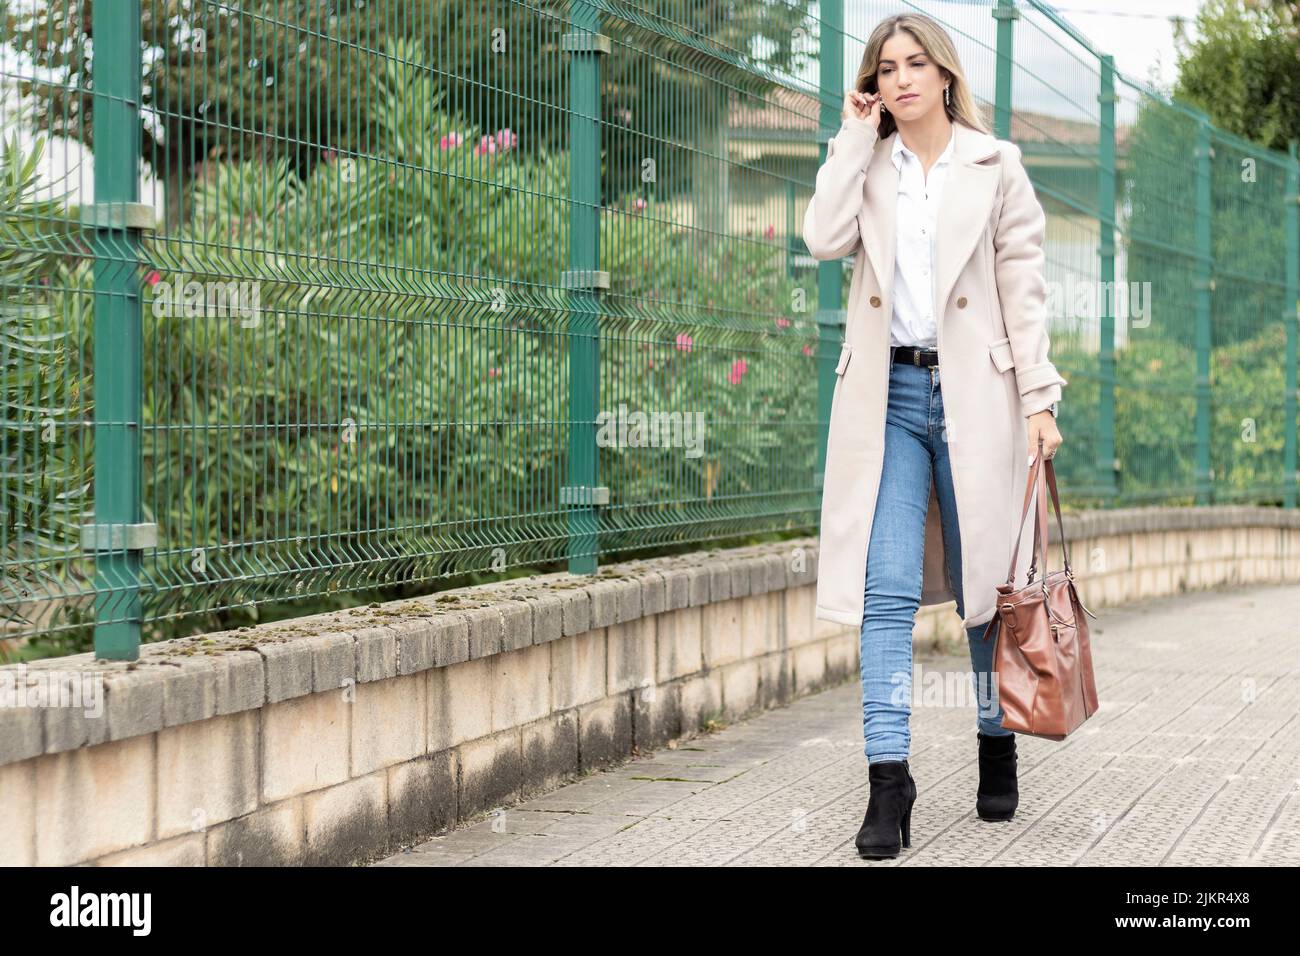 femme d'affaires marchant dans la rue avec un sac marron un manteau beige, une chemise blanche et un jean Banque D'Images